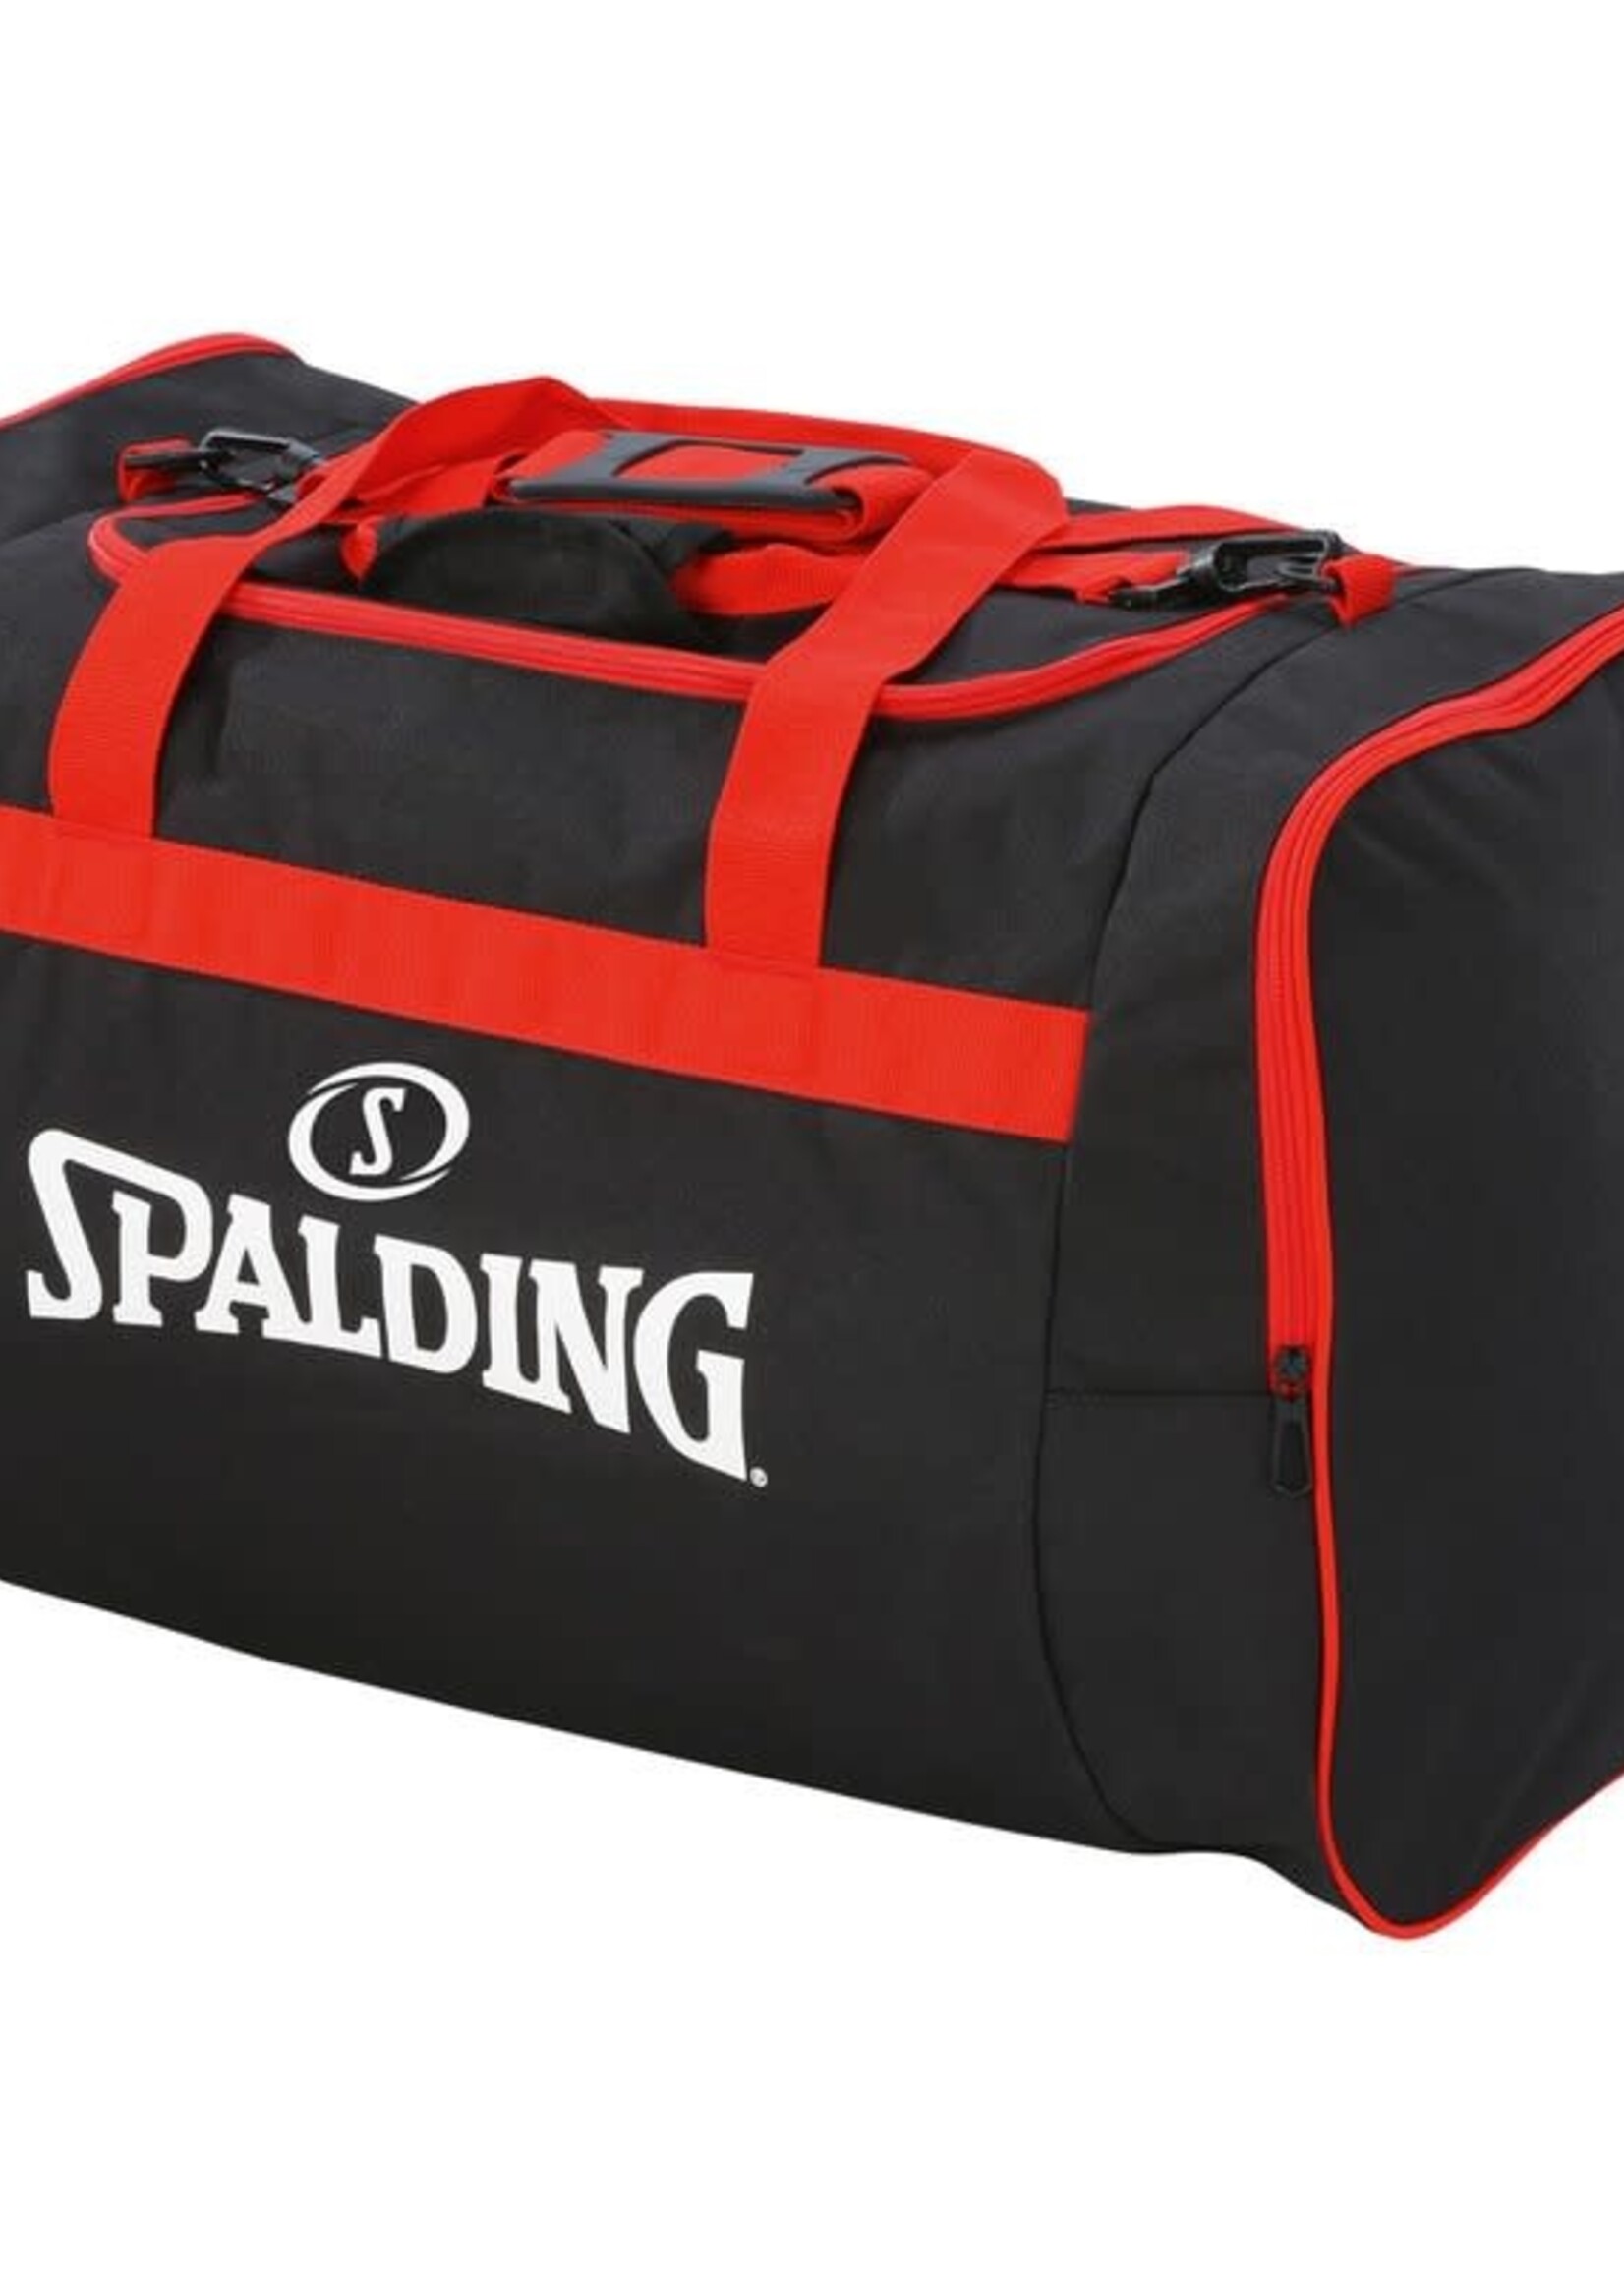 Spalding Team Bag Large 80L Black Red